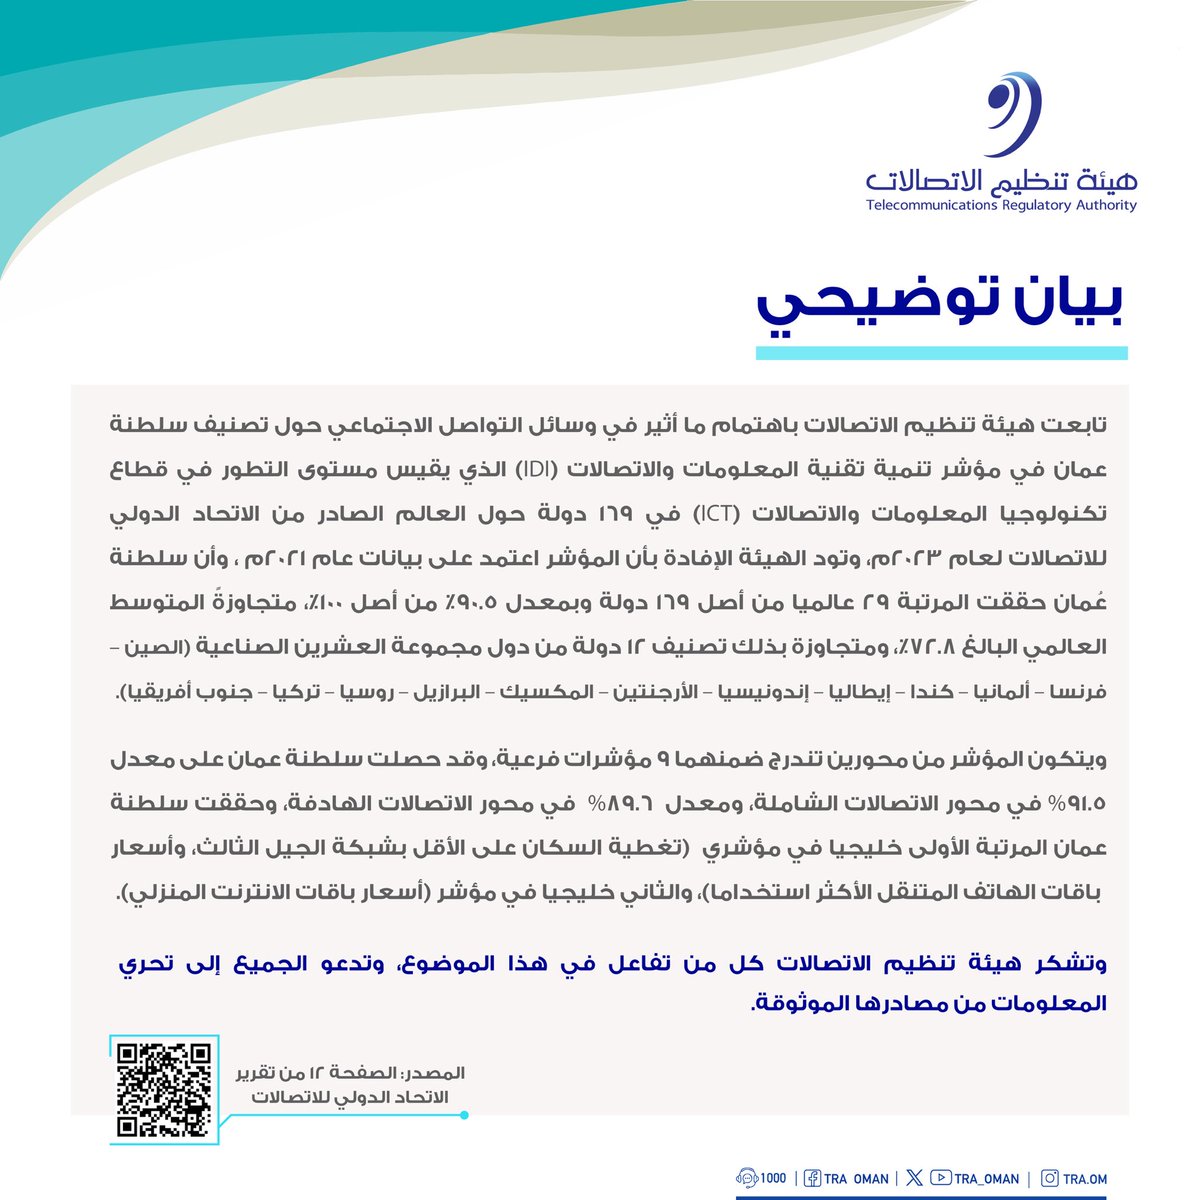 هيئة تنظيم الاتصالات تنشر بيانًا توضيحيًا حول ما أُثير في وسائل التواصل الاجتماعي بشأن تصنيف سلطنة عمان في مؤشر تنمية تقنية المعلومات والاتصالات (IDI). #بيئة_معززة_لمجتمع_رقمي